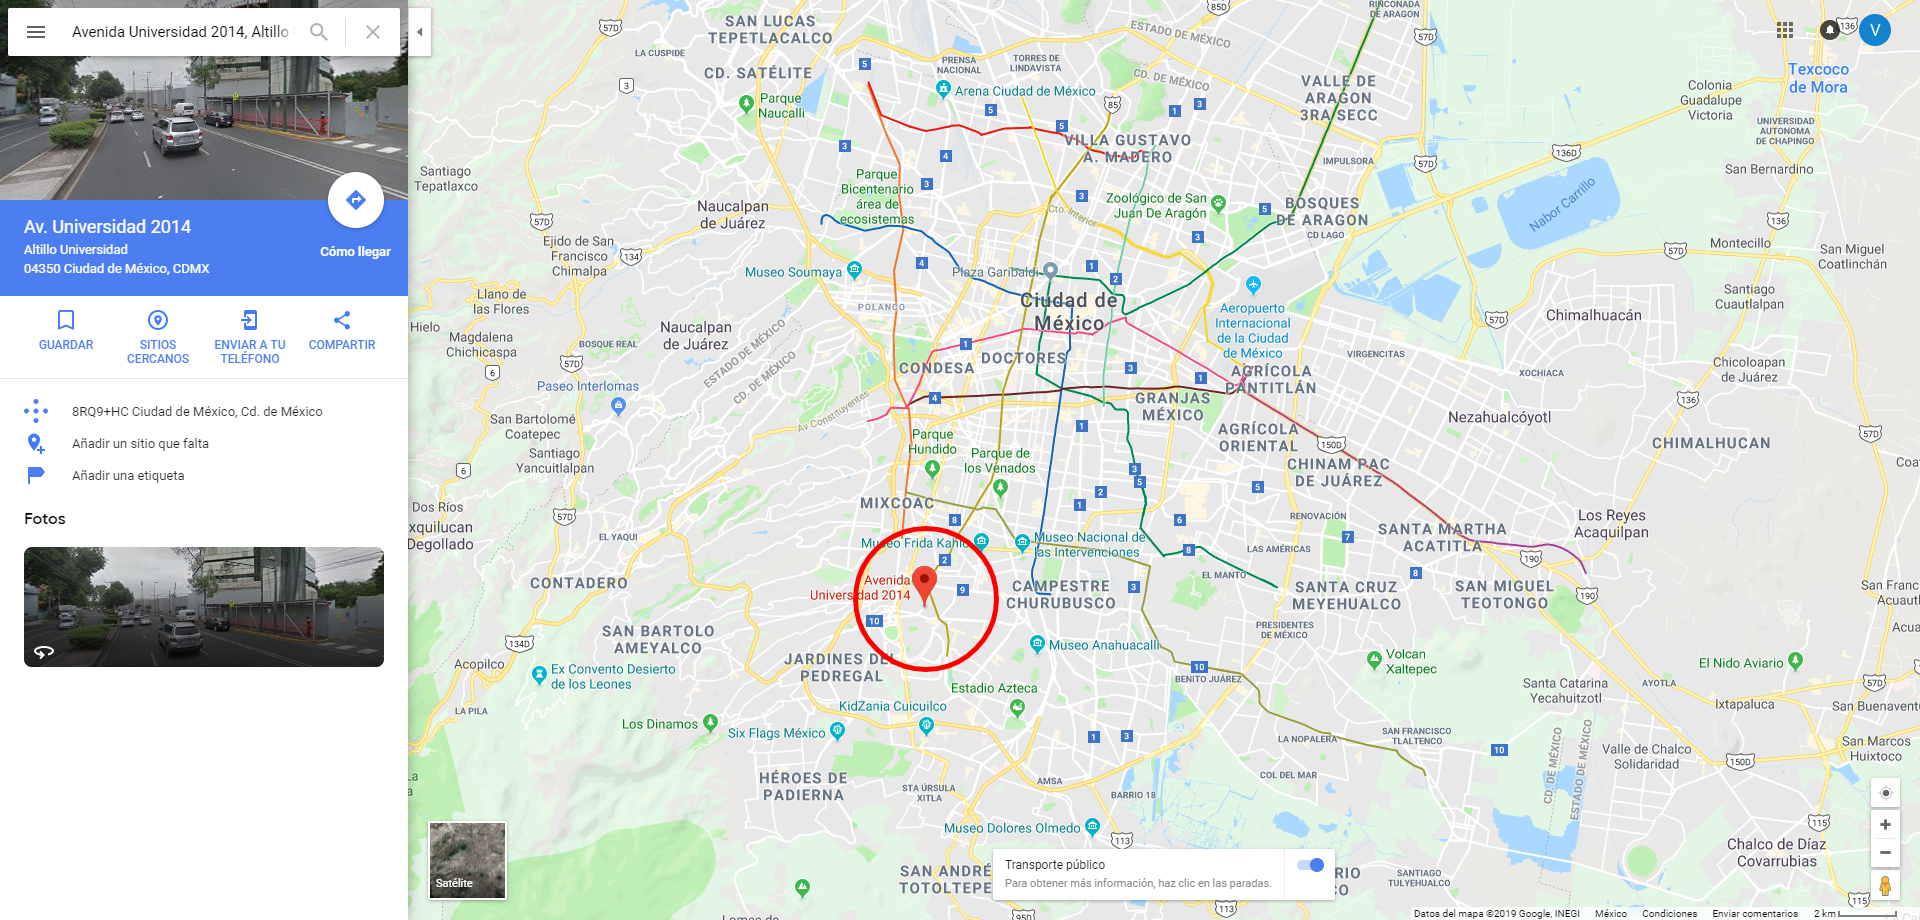 Cómo ver el mapa del metro en Google Maps? | DineroenImagen